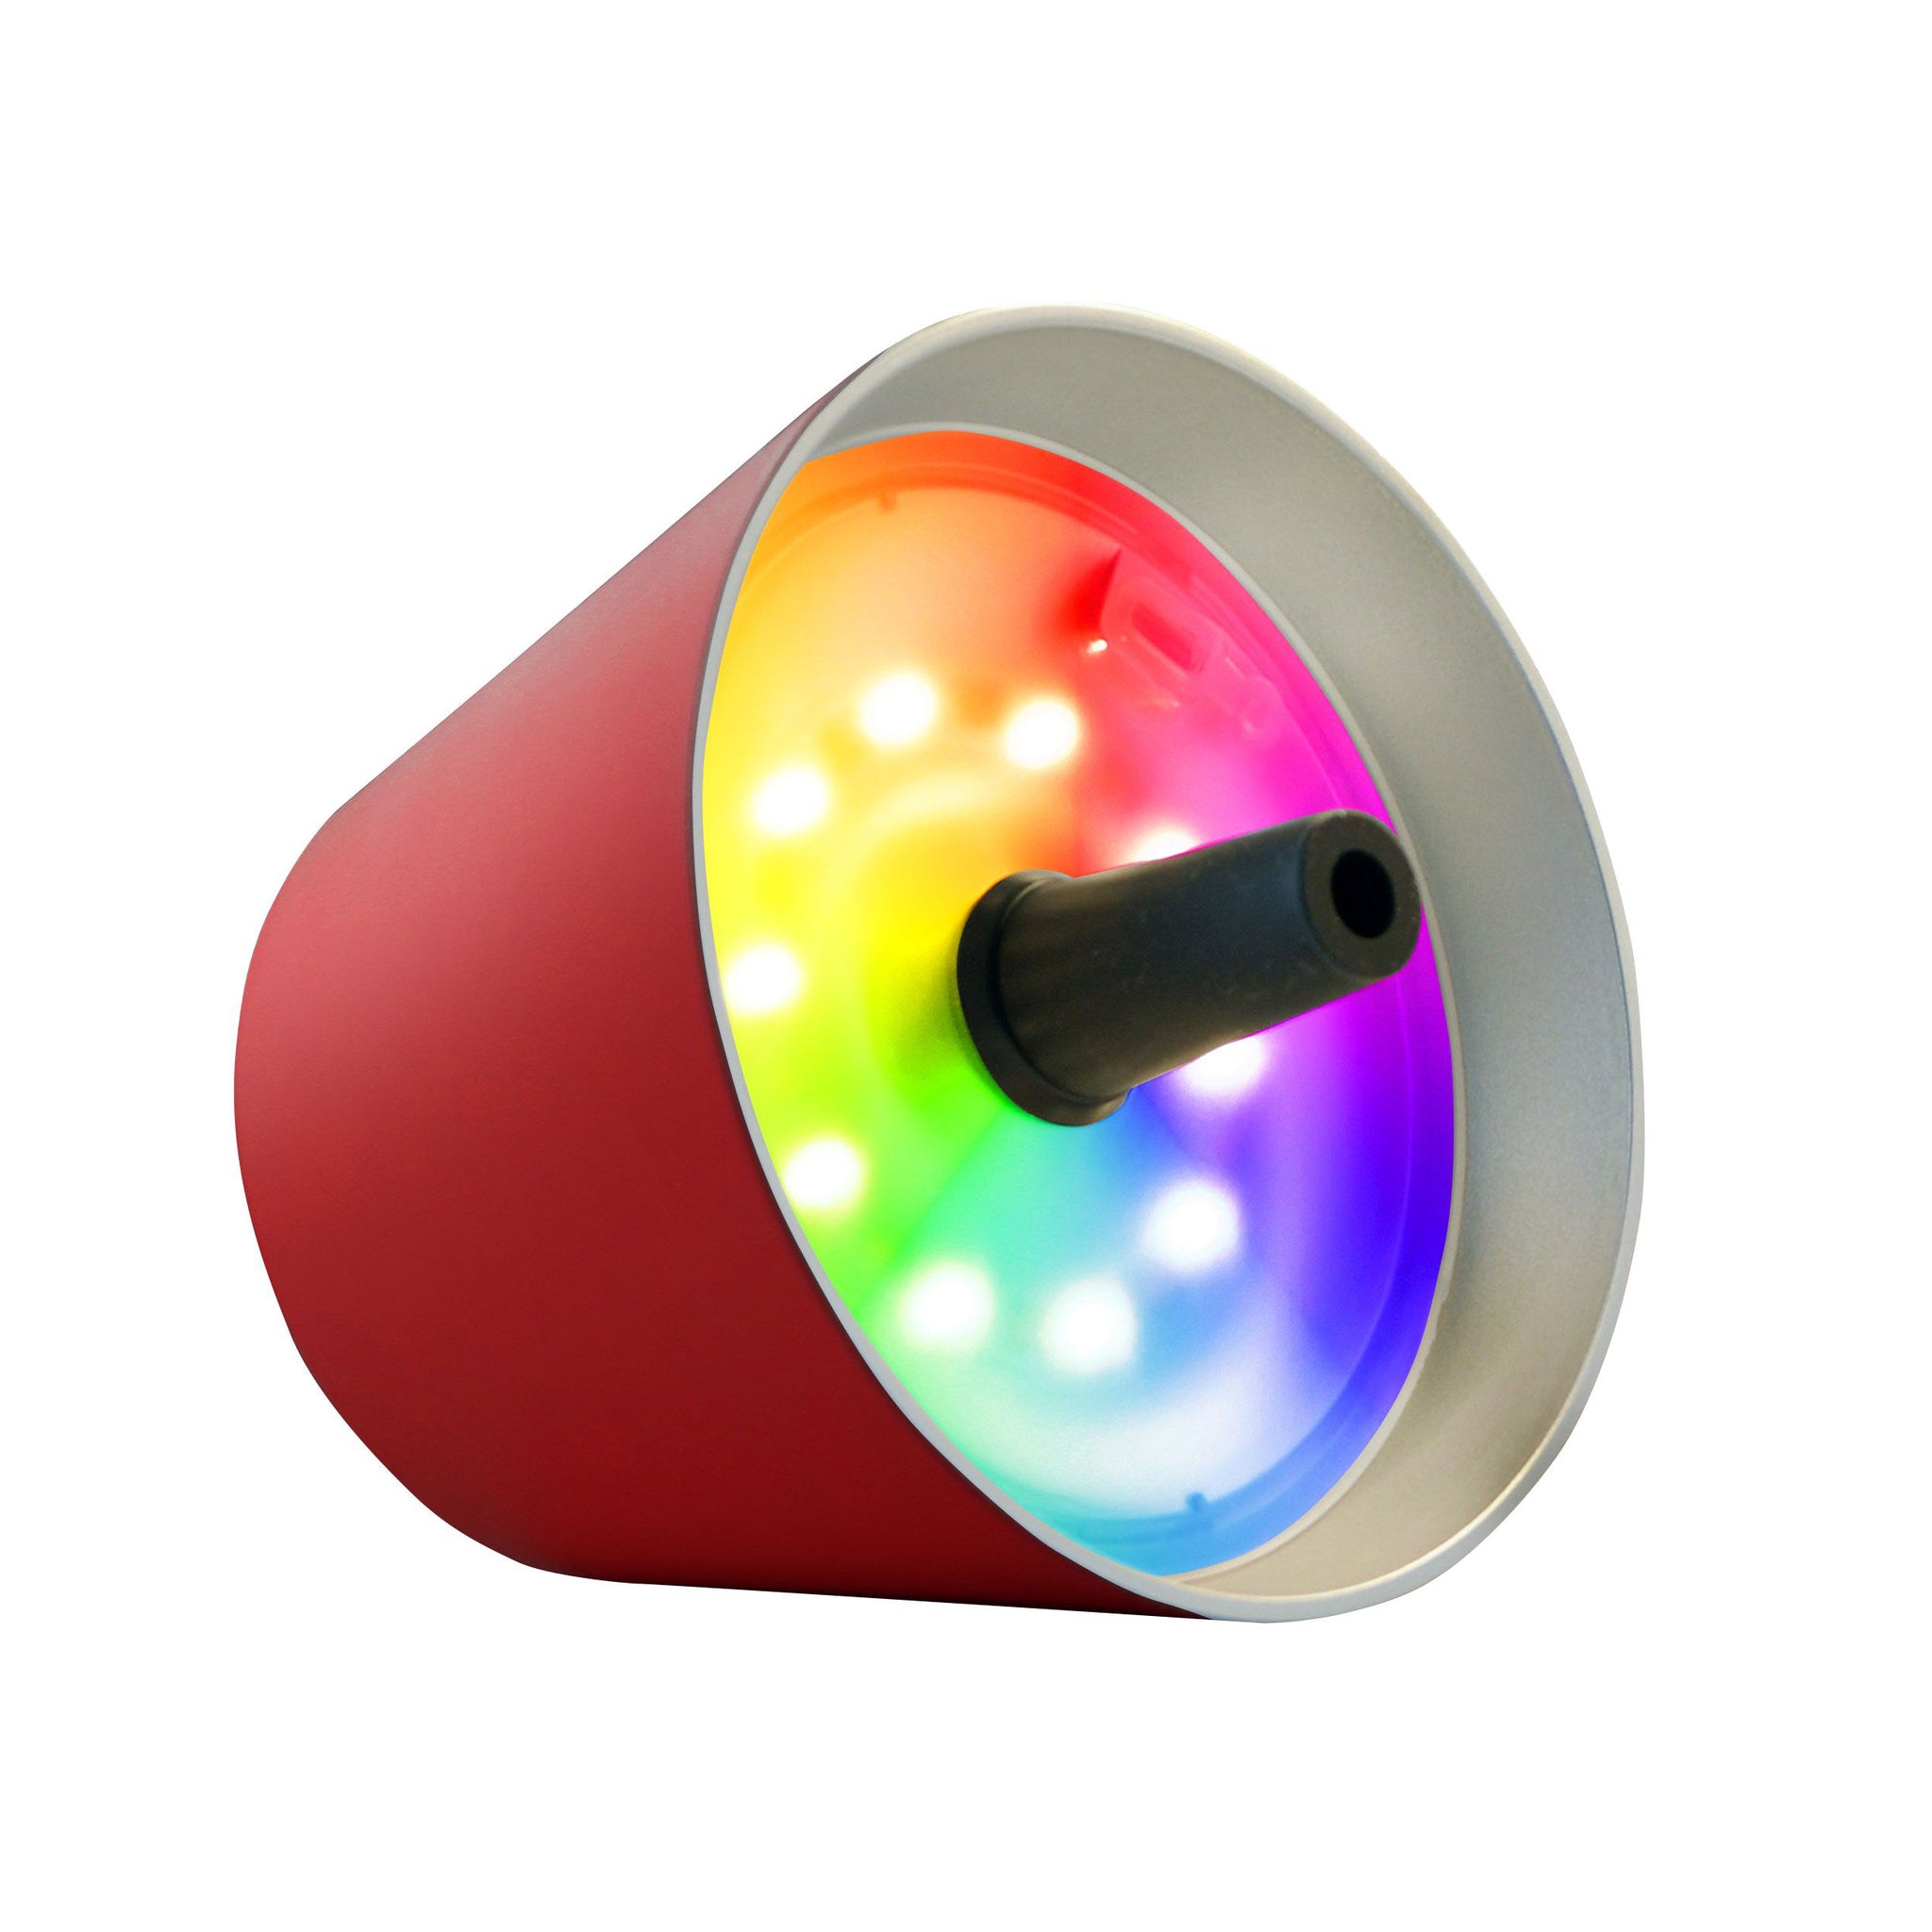 Sompex Top 2.0 Oplaadbare Flessenlamp│Rood│Buitenverlichting│art. 72530│lamp liggend met RGB-kleuren verlichting aan